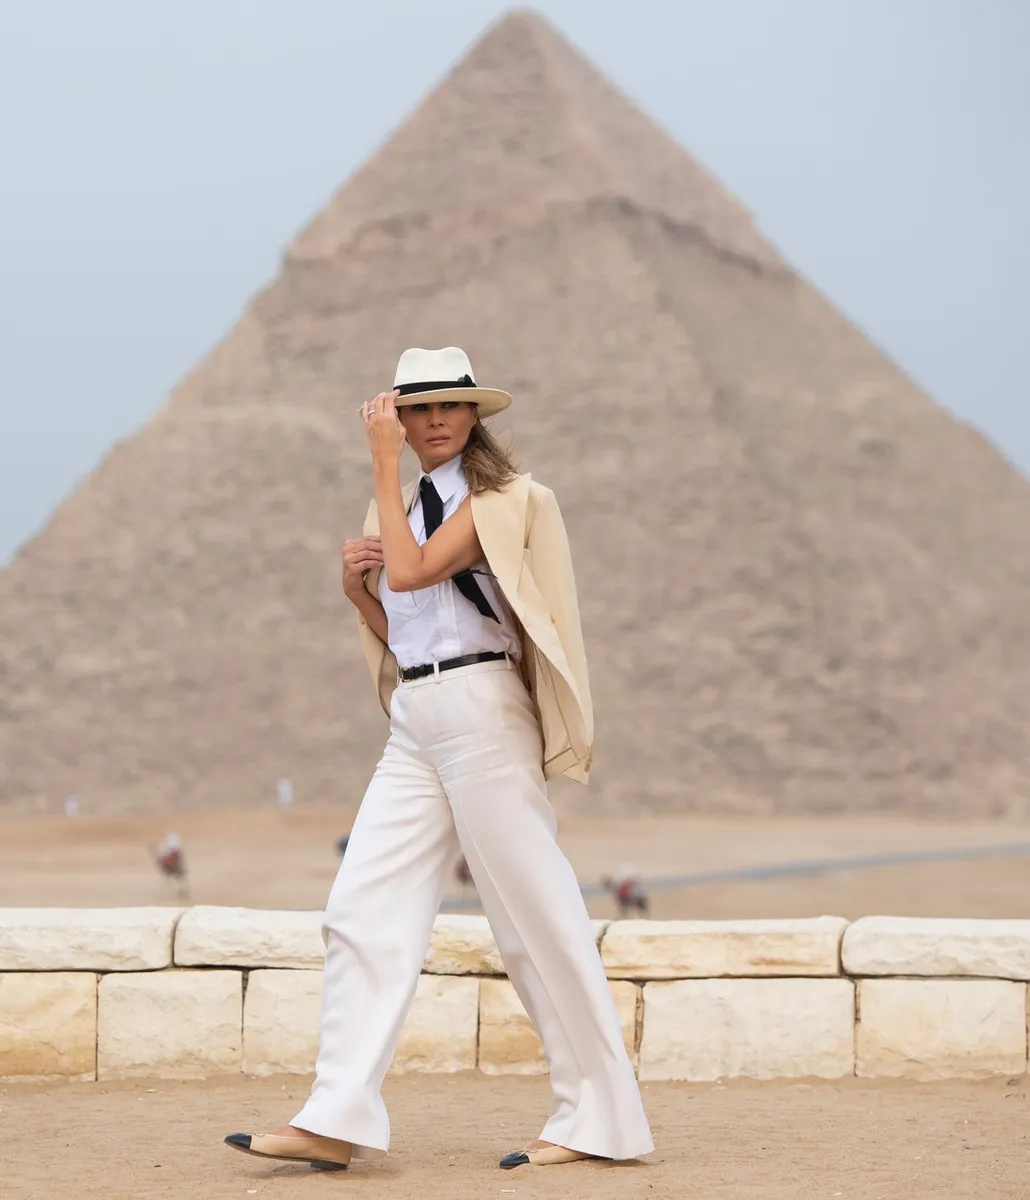 Look koji je nosila za posjet piramidama u Egiptu podijelio je javnost, no mi mislimo kako je izgledala odlično. 